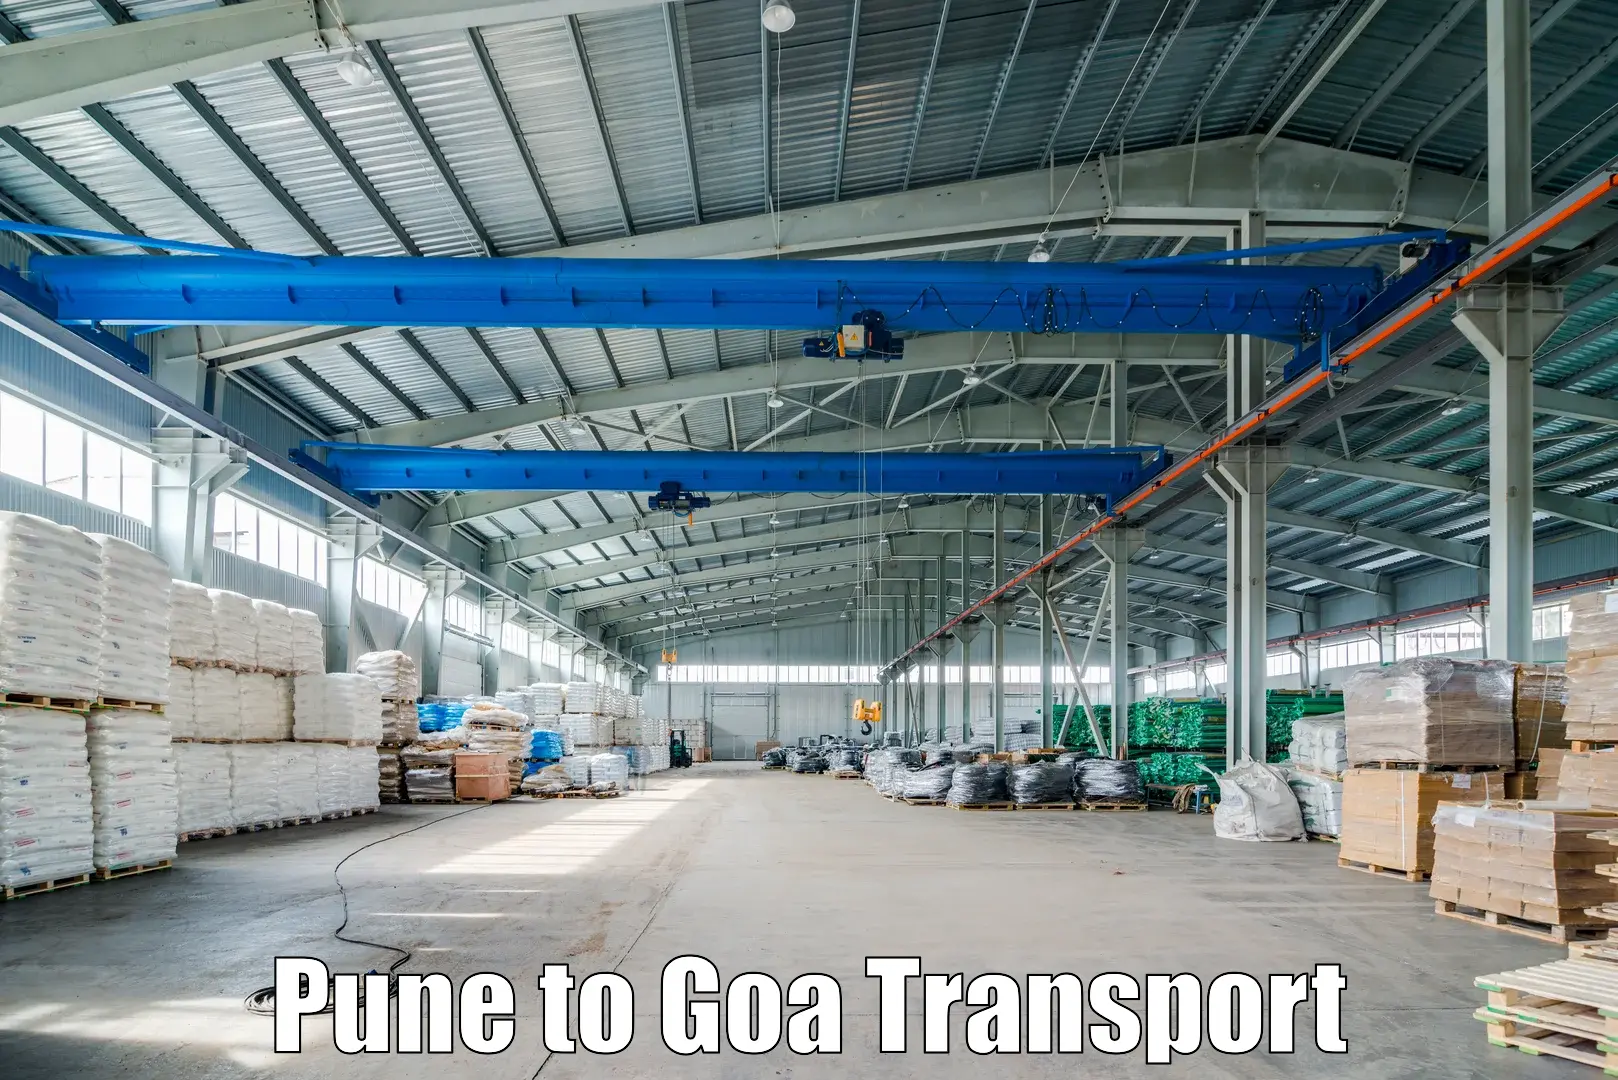 Bike transport service Pune to Vasco da Gama